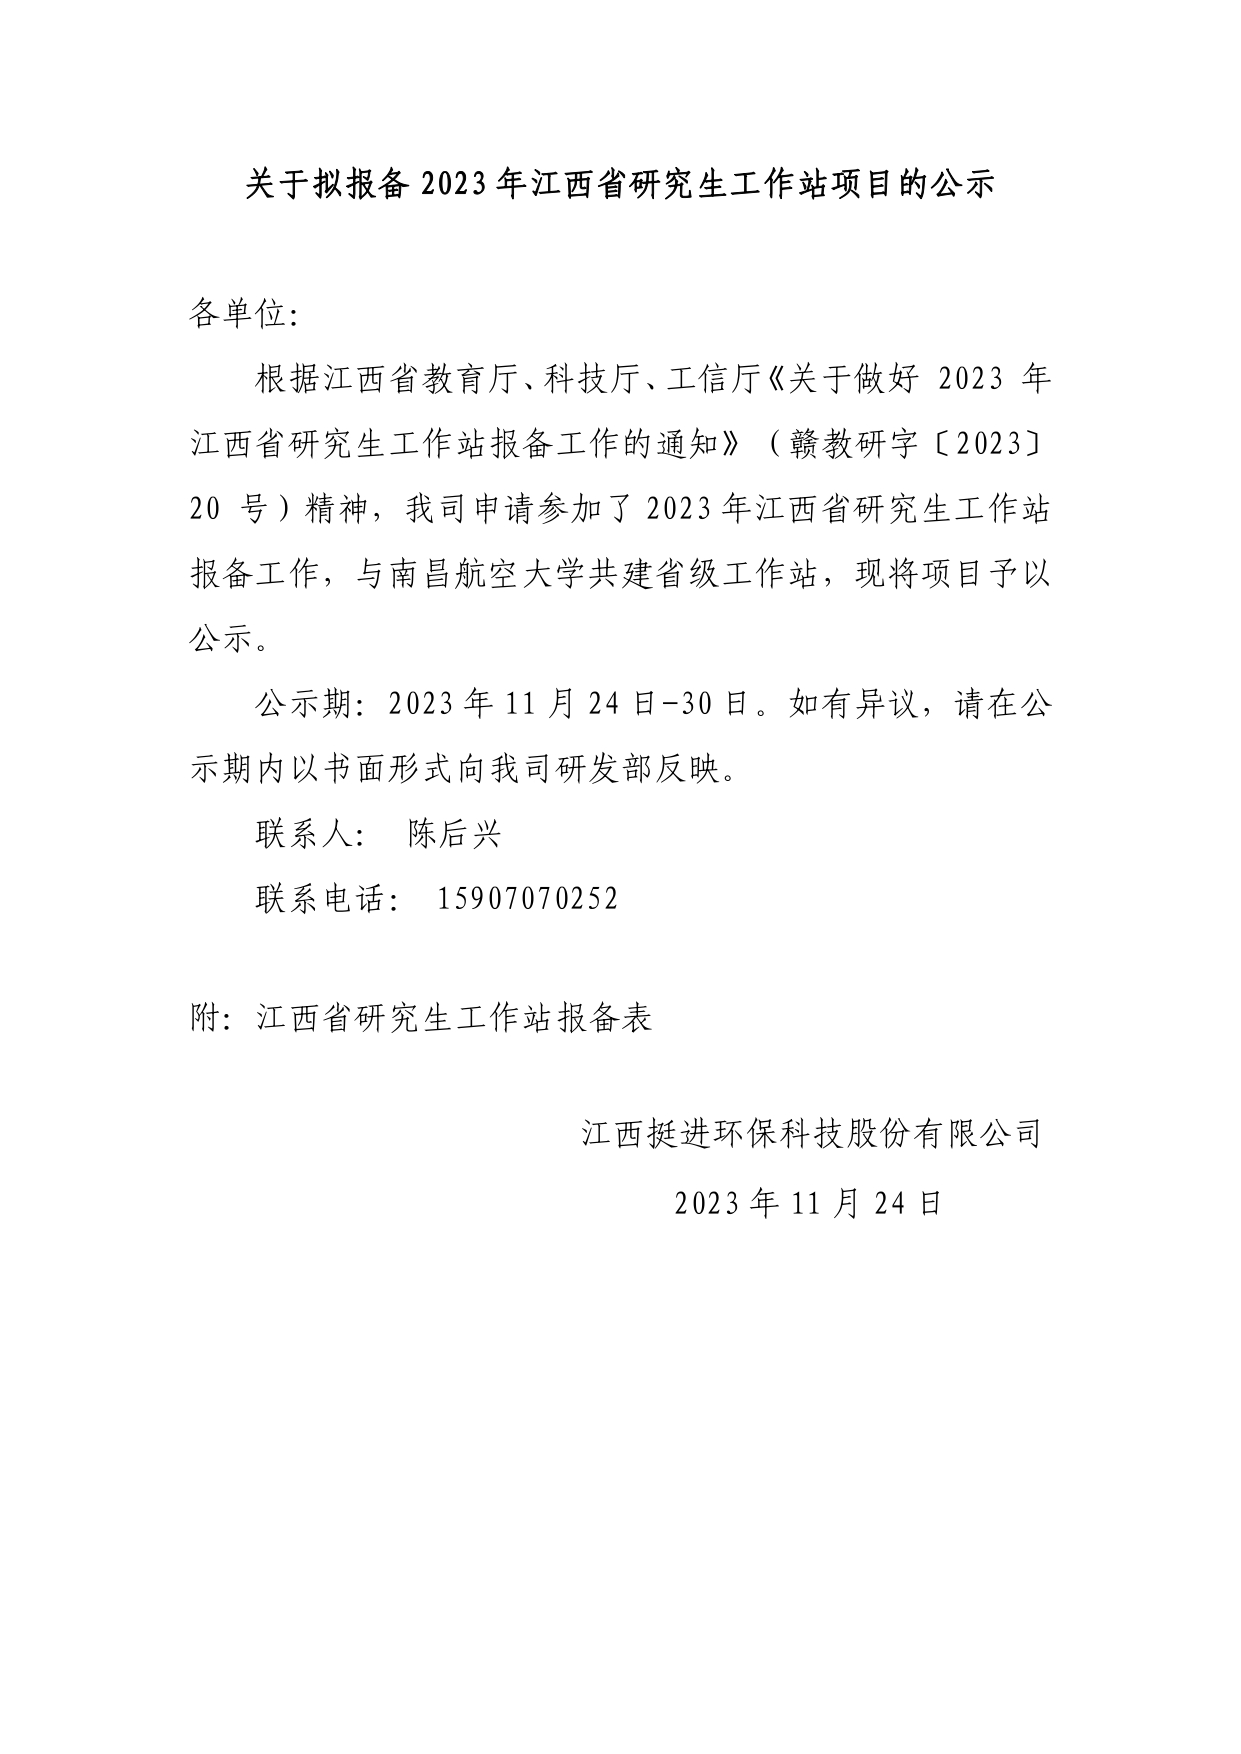 关于拟报备2023年江西省研究生工作站项目的公示